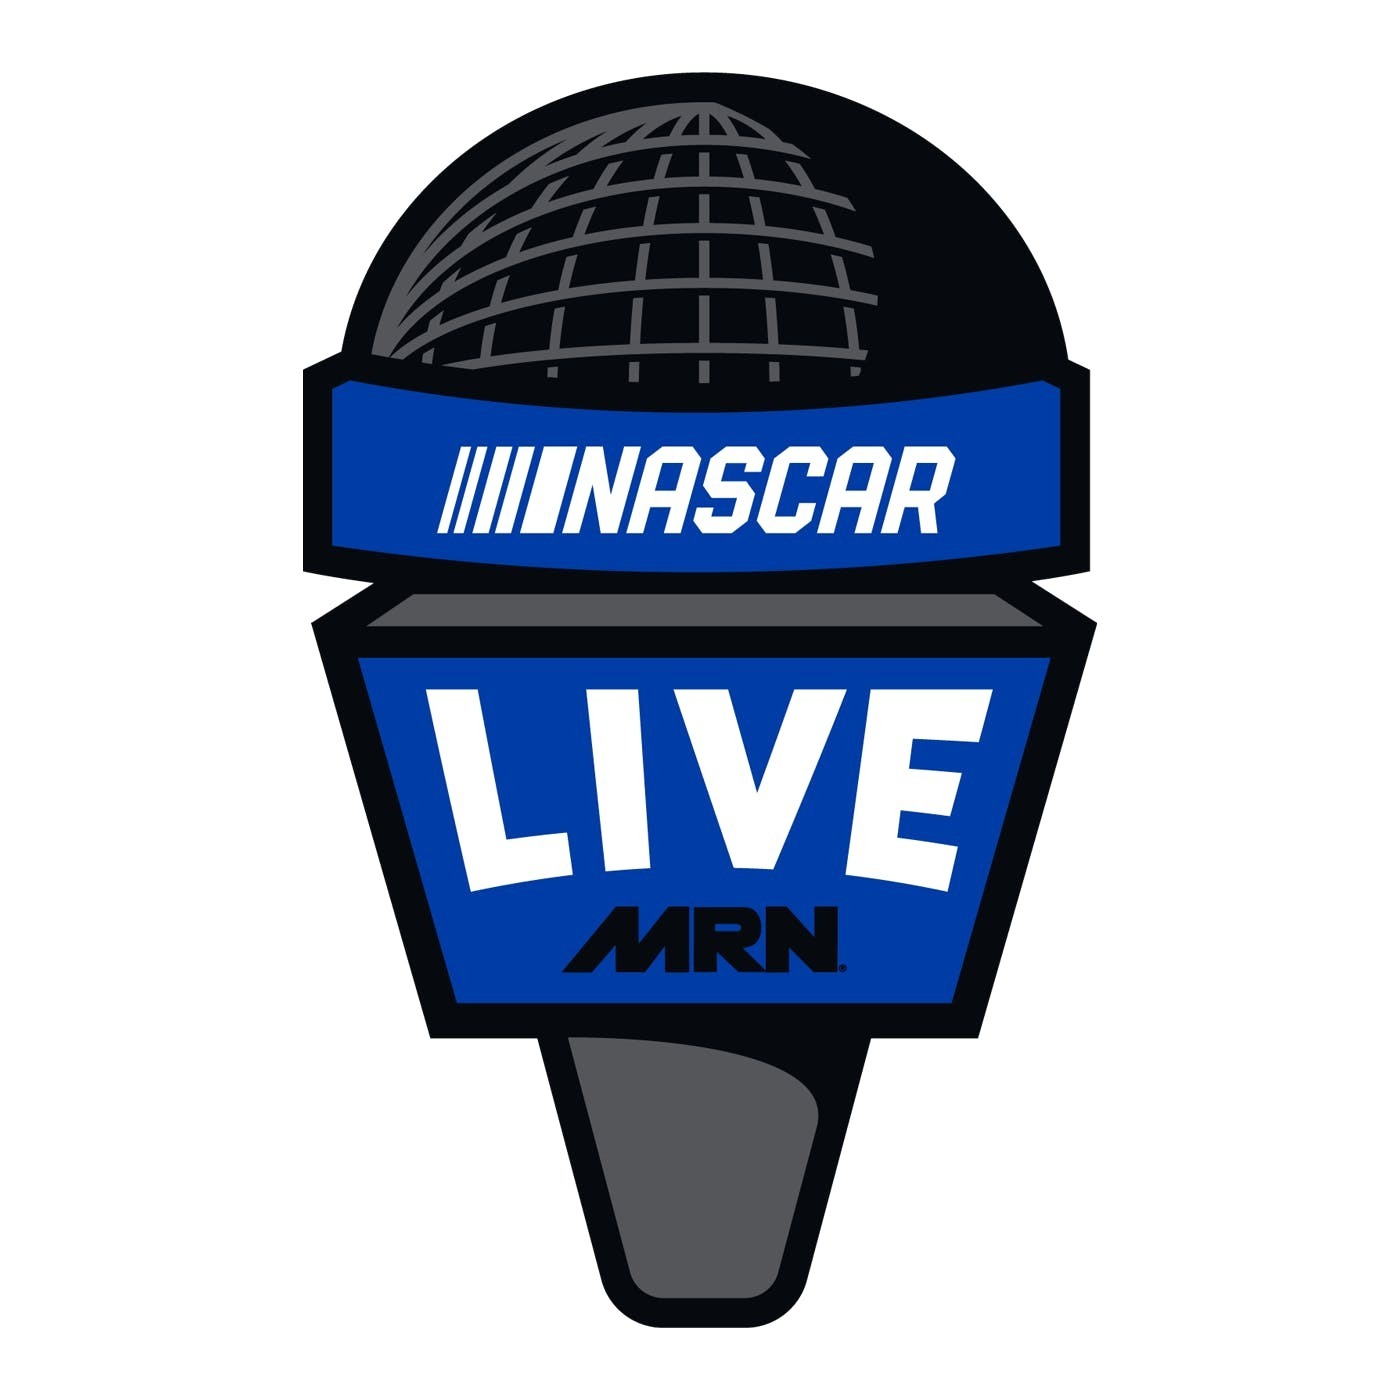 NASCAR LIVE WIDE OPEN Episode 122 : Grant Enfinger